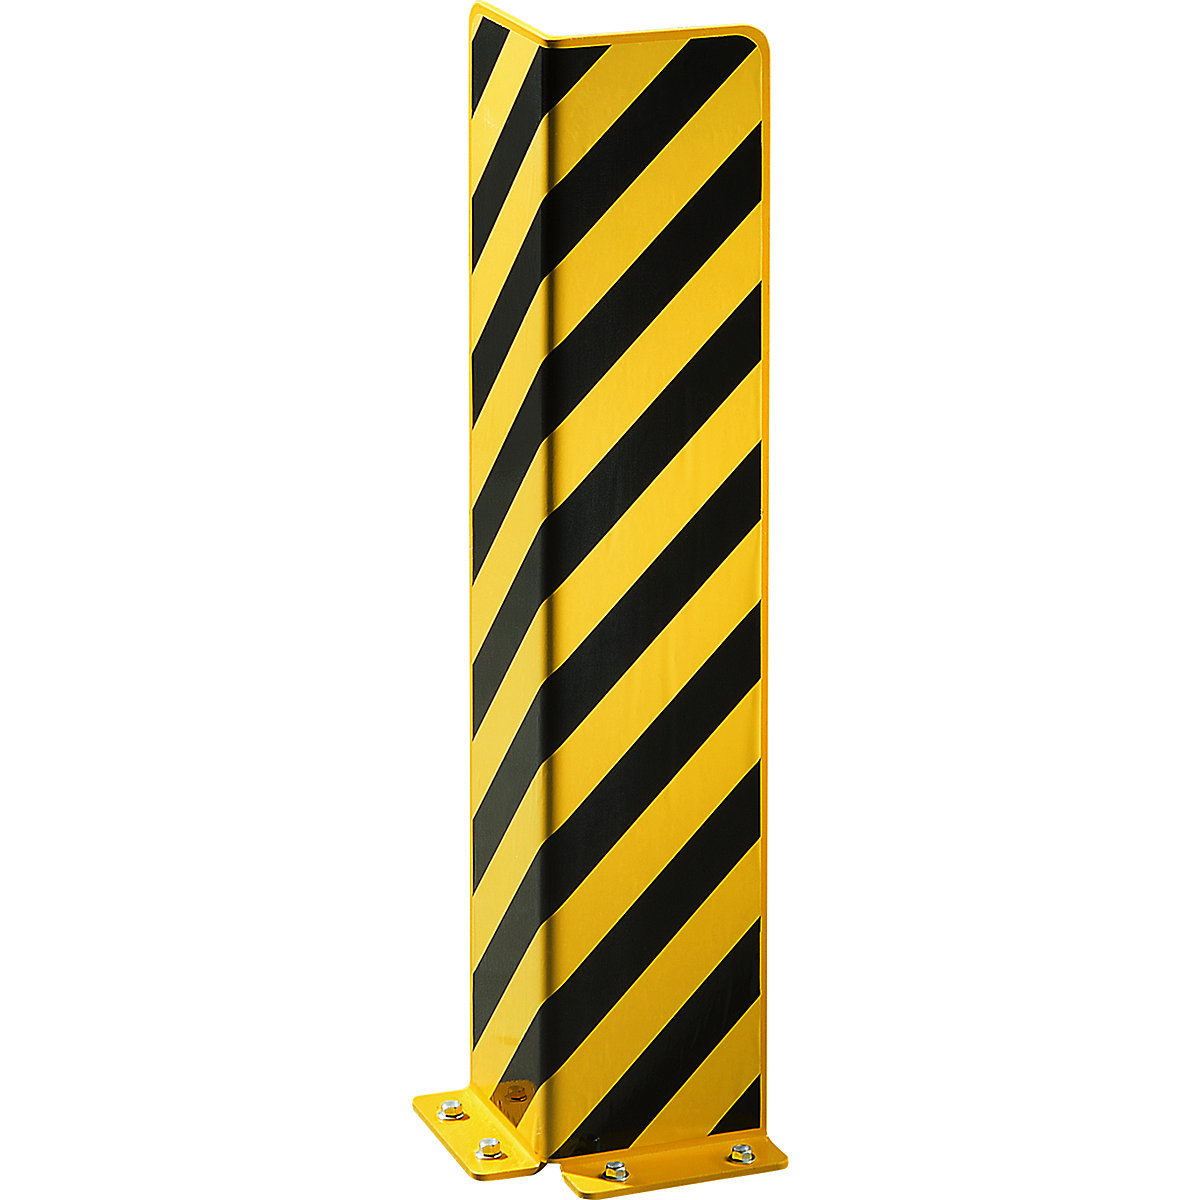 zum Aufdübeln gelb/schwarz Höhe 40 cm aus Stahl ROBUSTO Anfahrschutzprofil L 